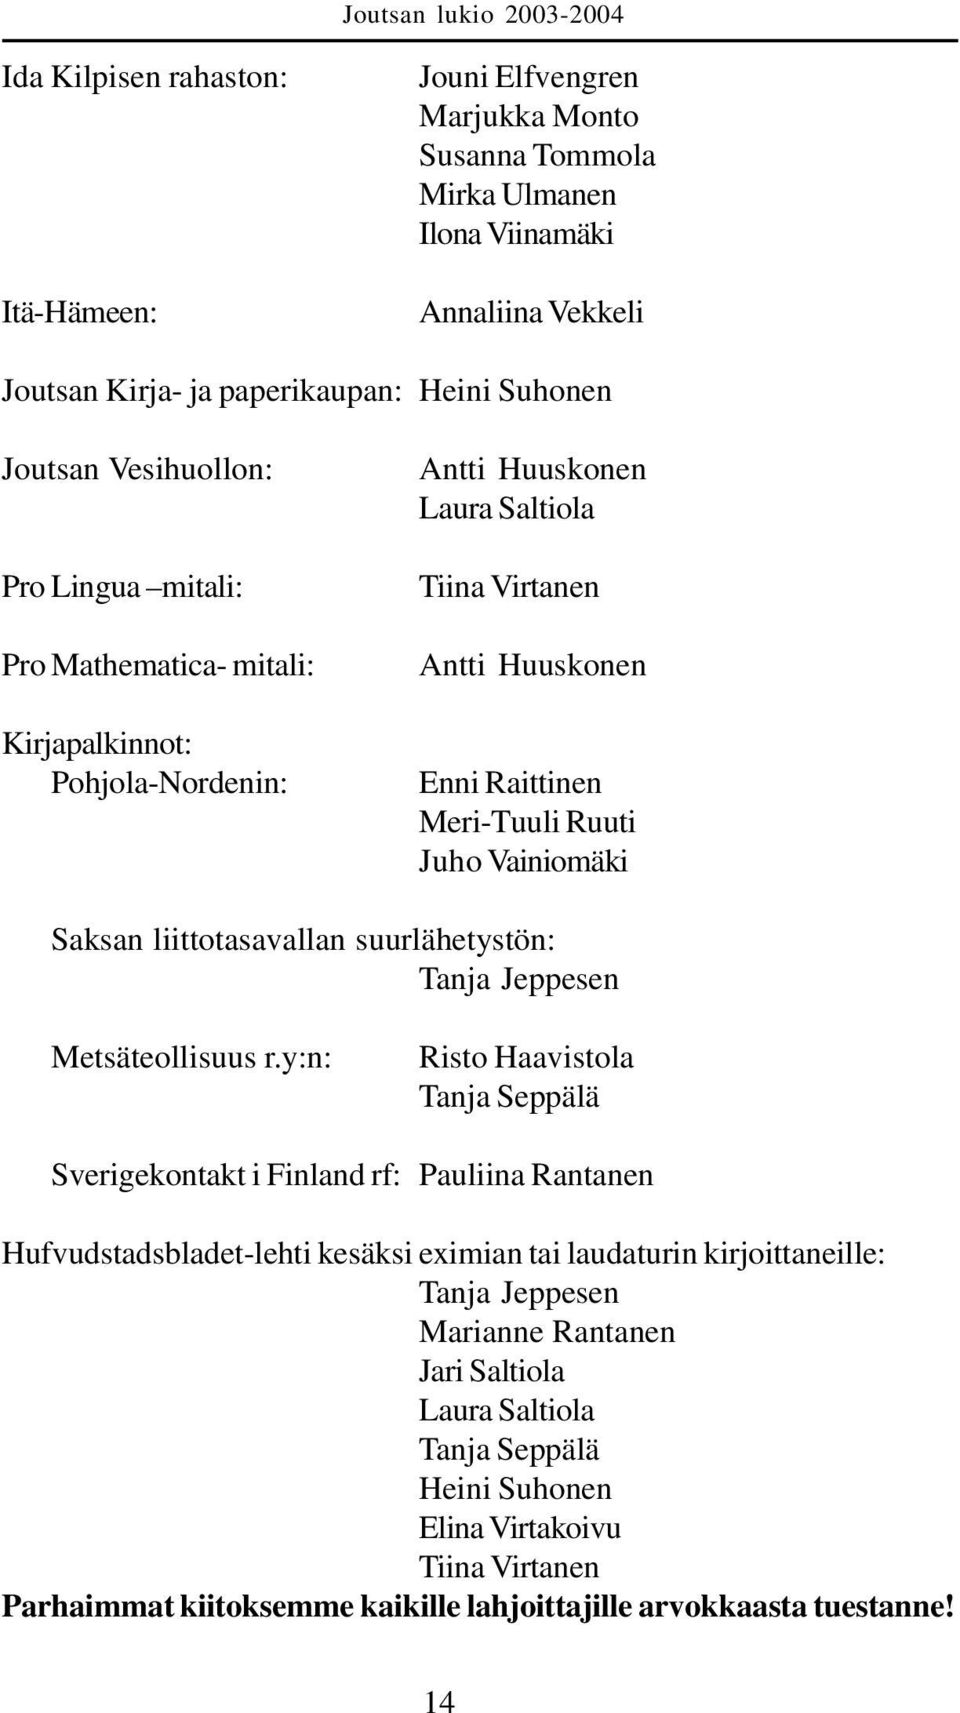 liittotasavallan suurlähetystön: Tanja Jeppesen Metsäteollisuus r.